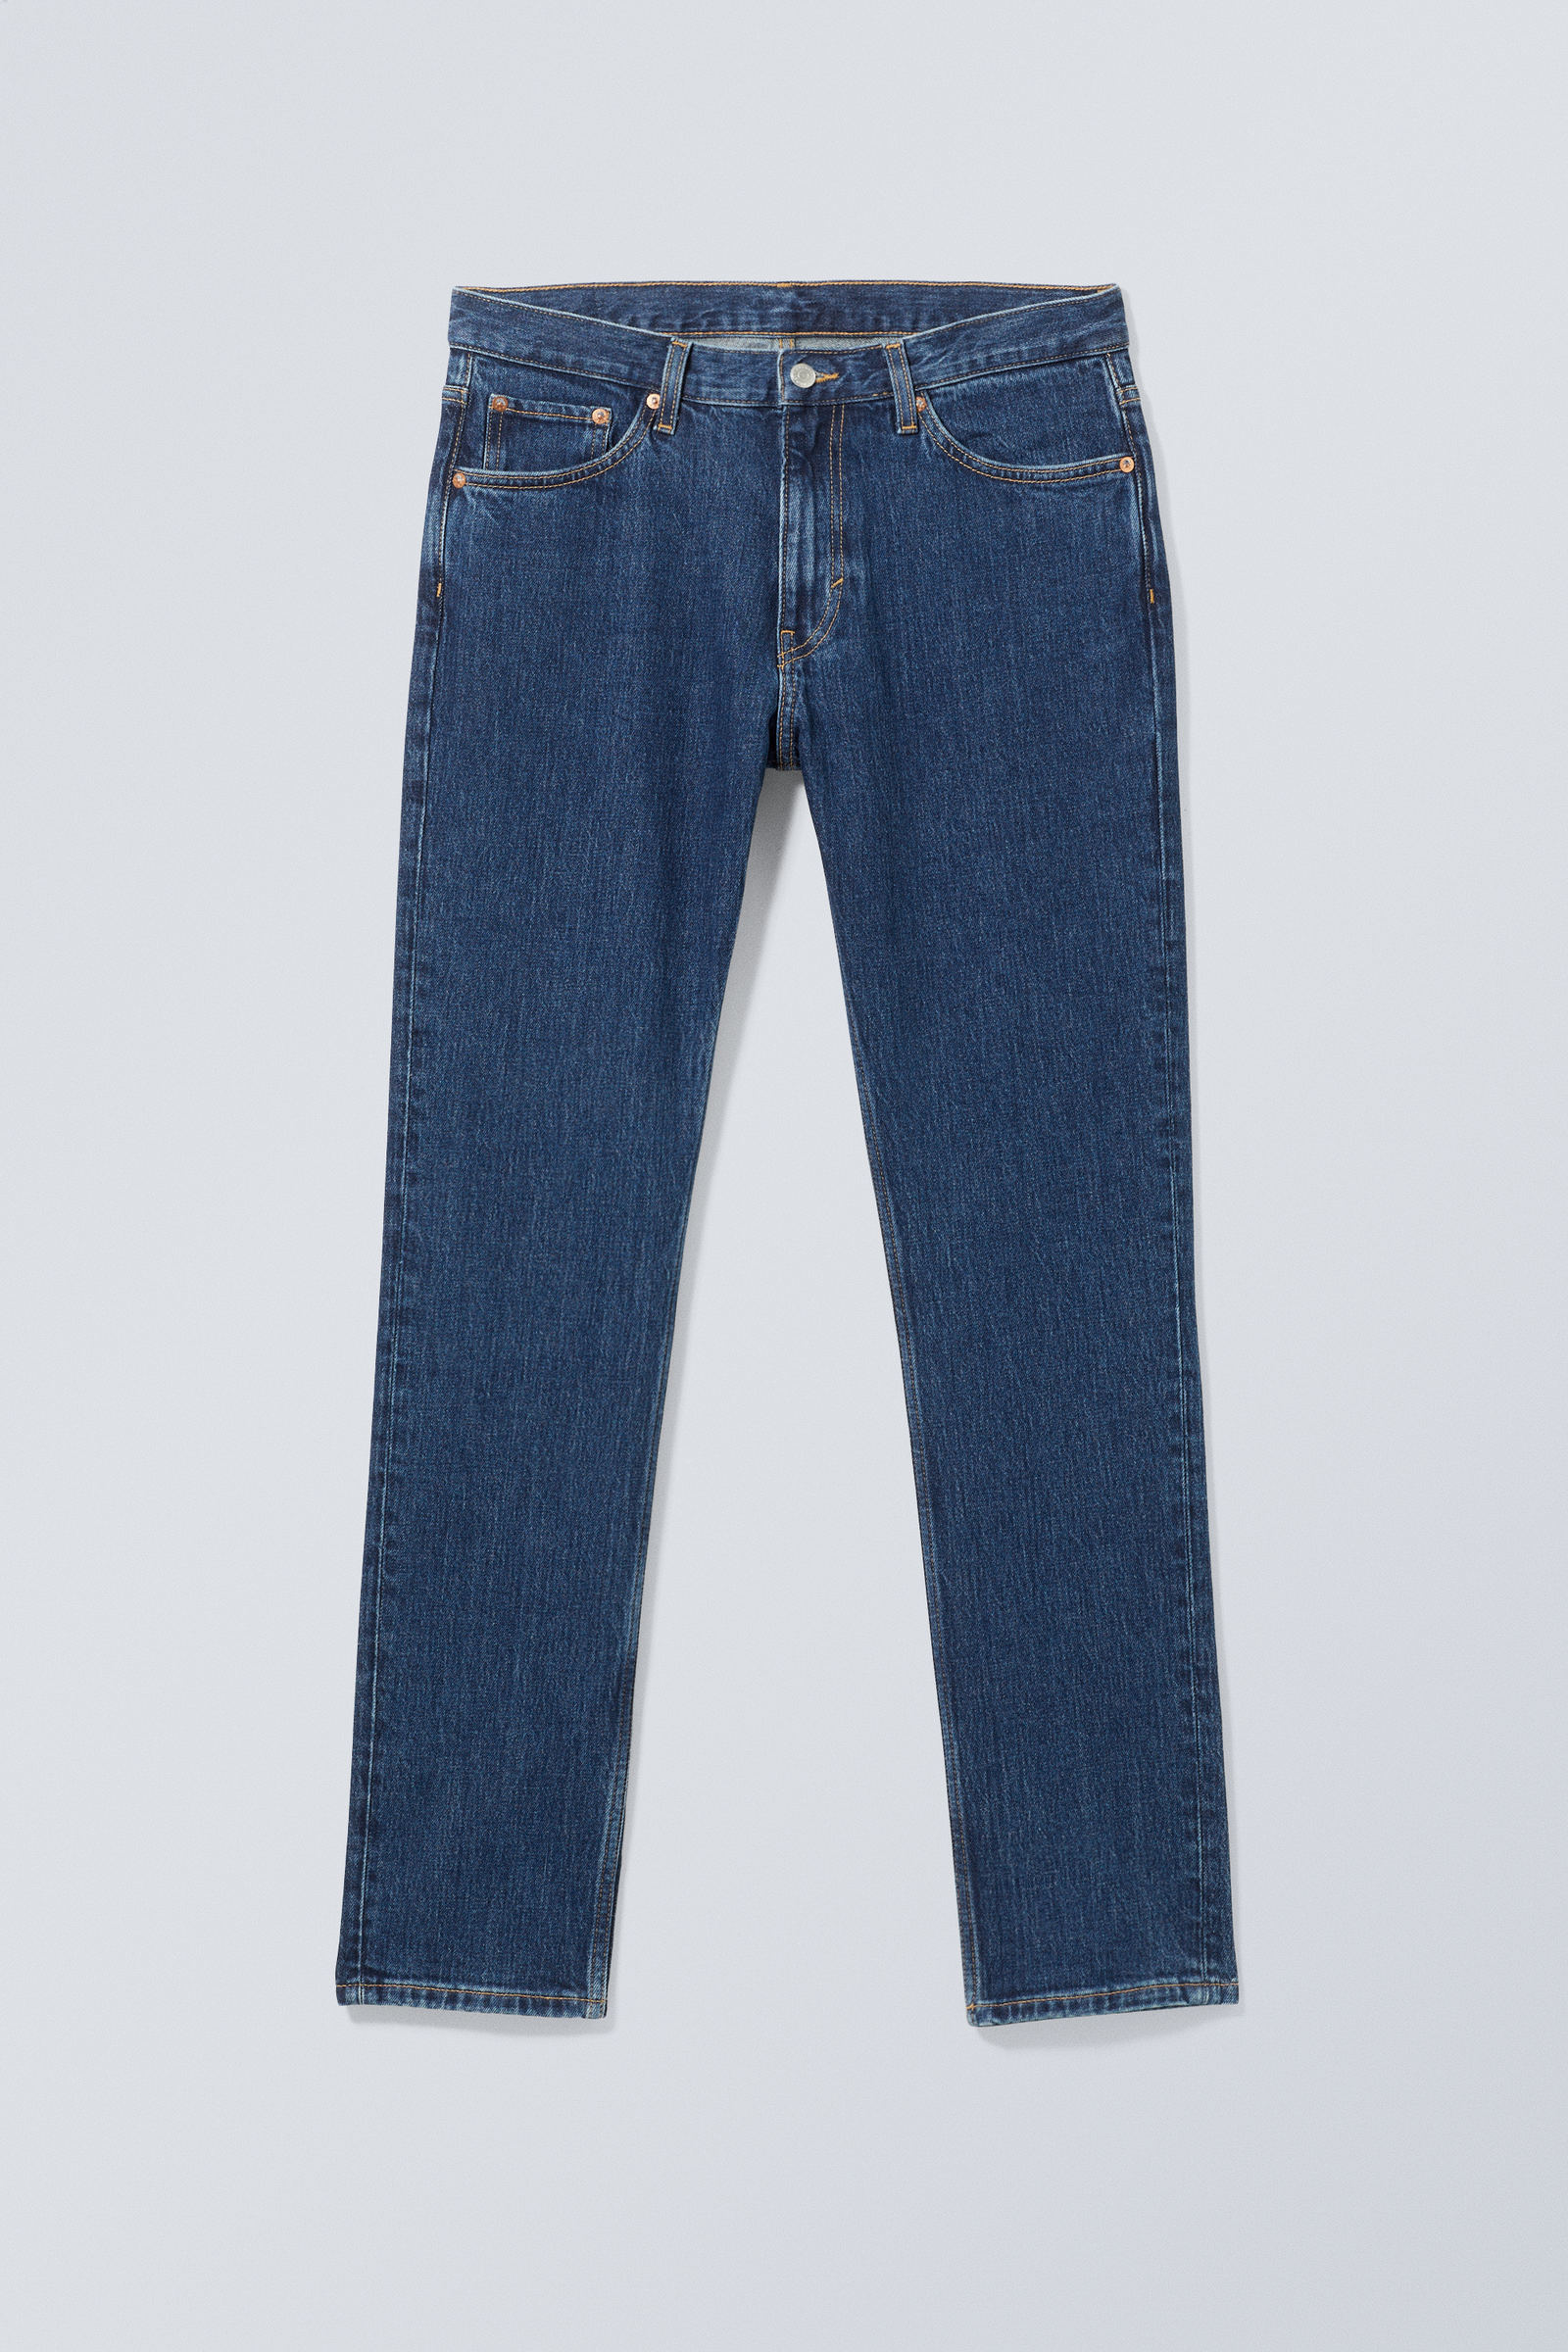 Nobel Blue - Easy Regular Straight Jeans - 1